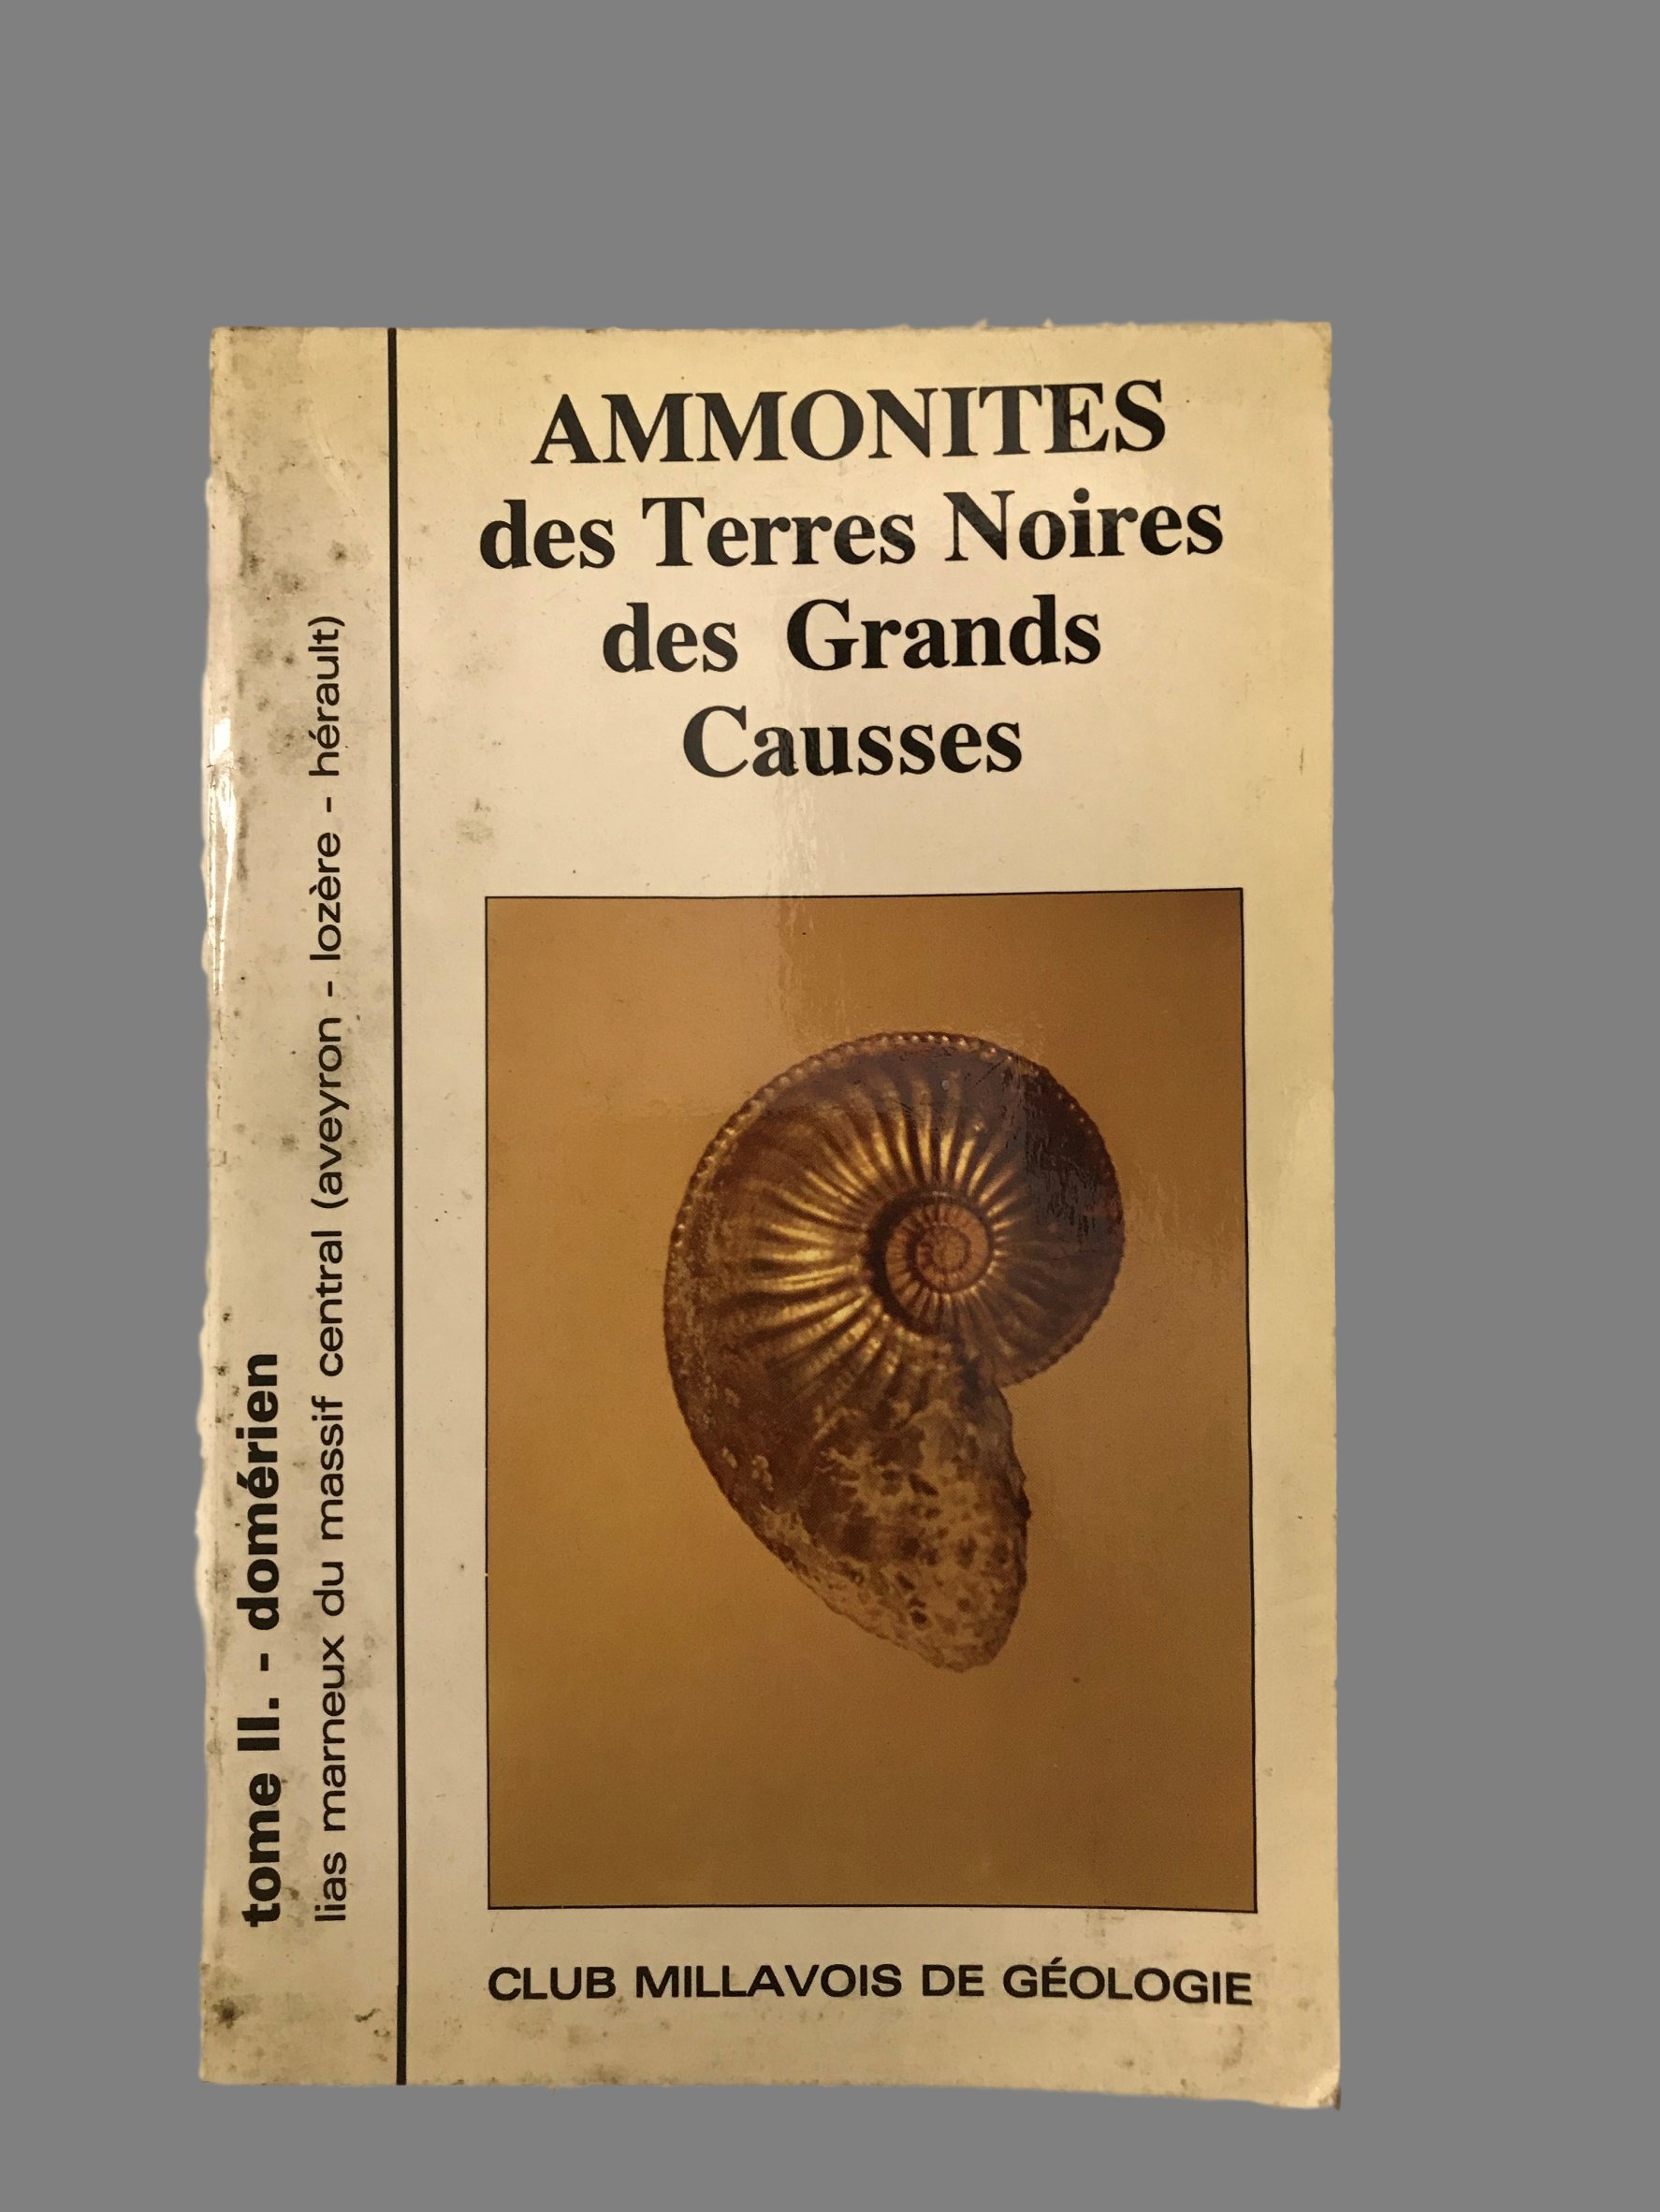 Ammonites des Terres Noires des Grands Causses (fossiles en Aveyron, Lozère, Hérault).